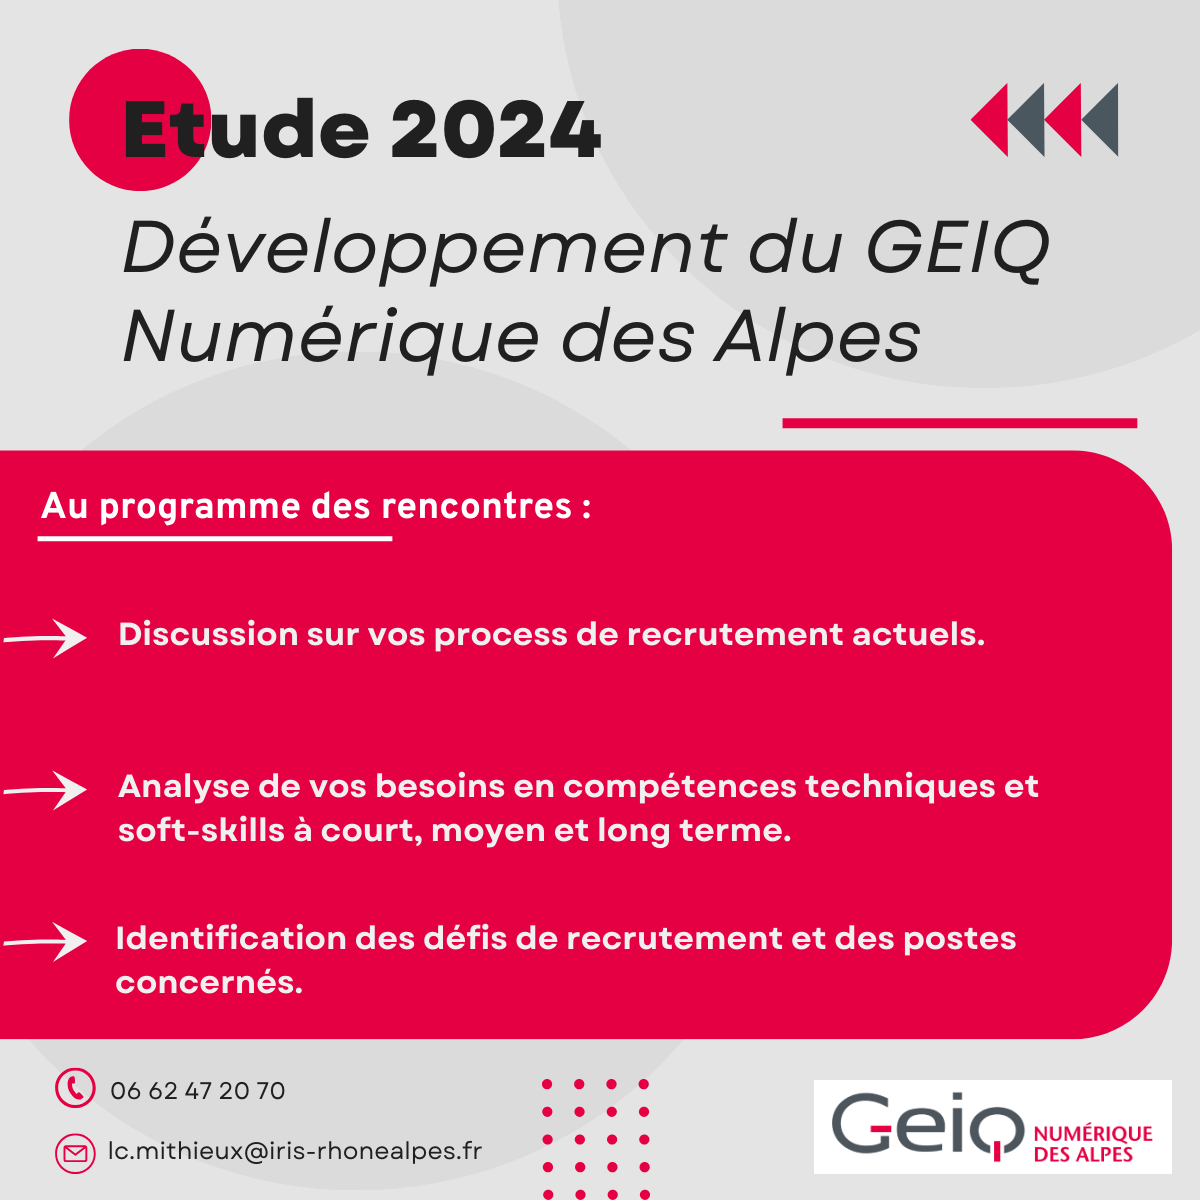 Etude 2024 – GEIQ Numérique des Alpes